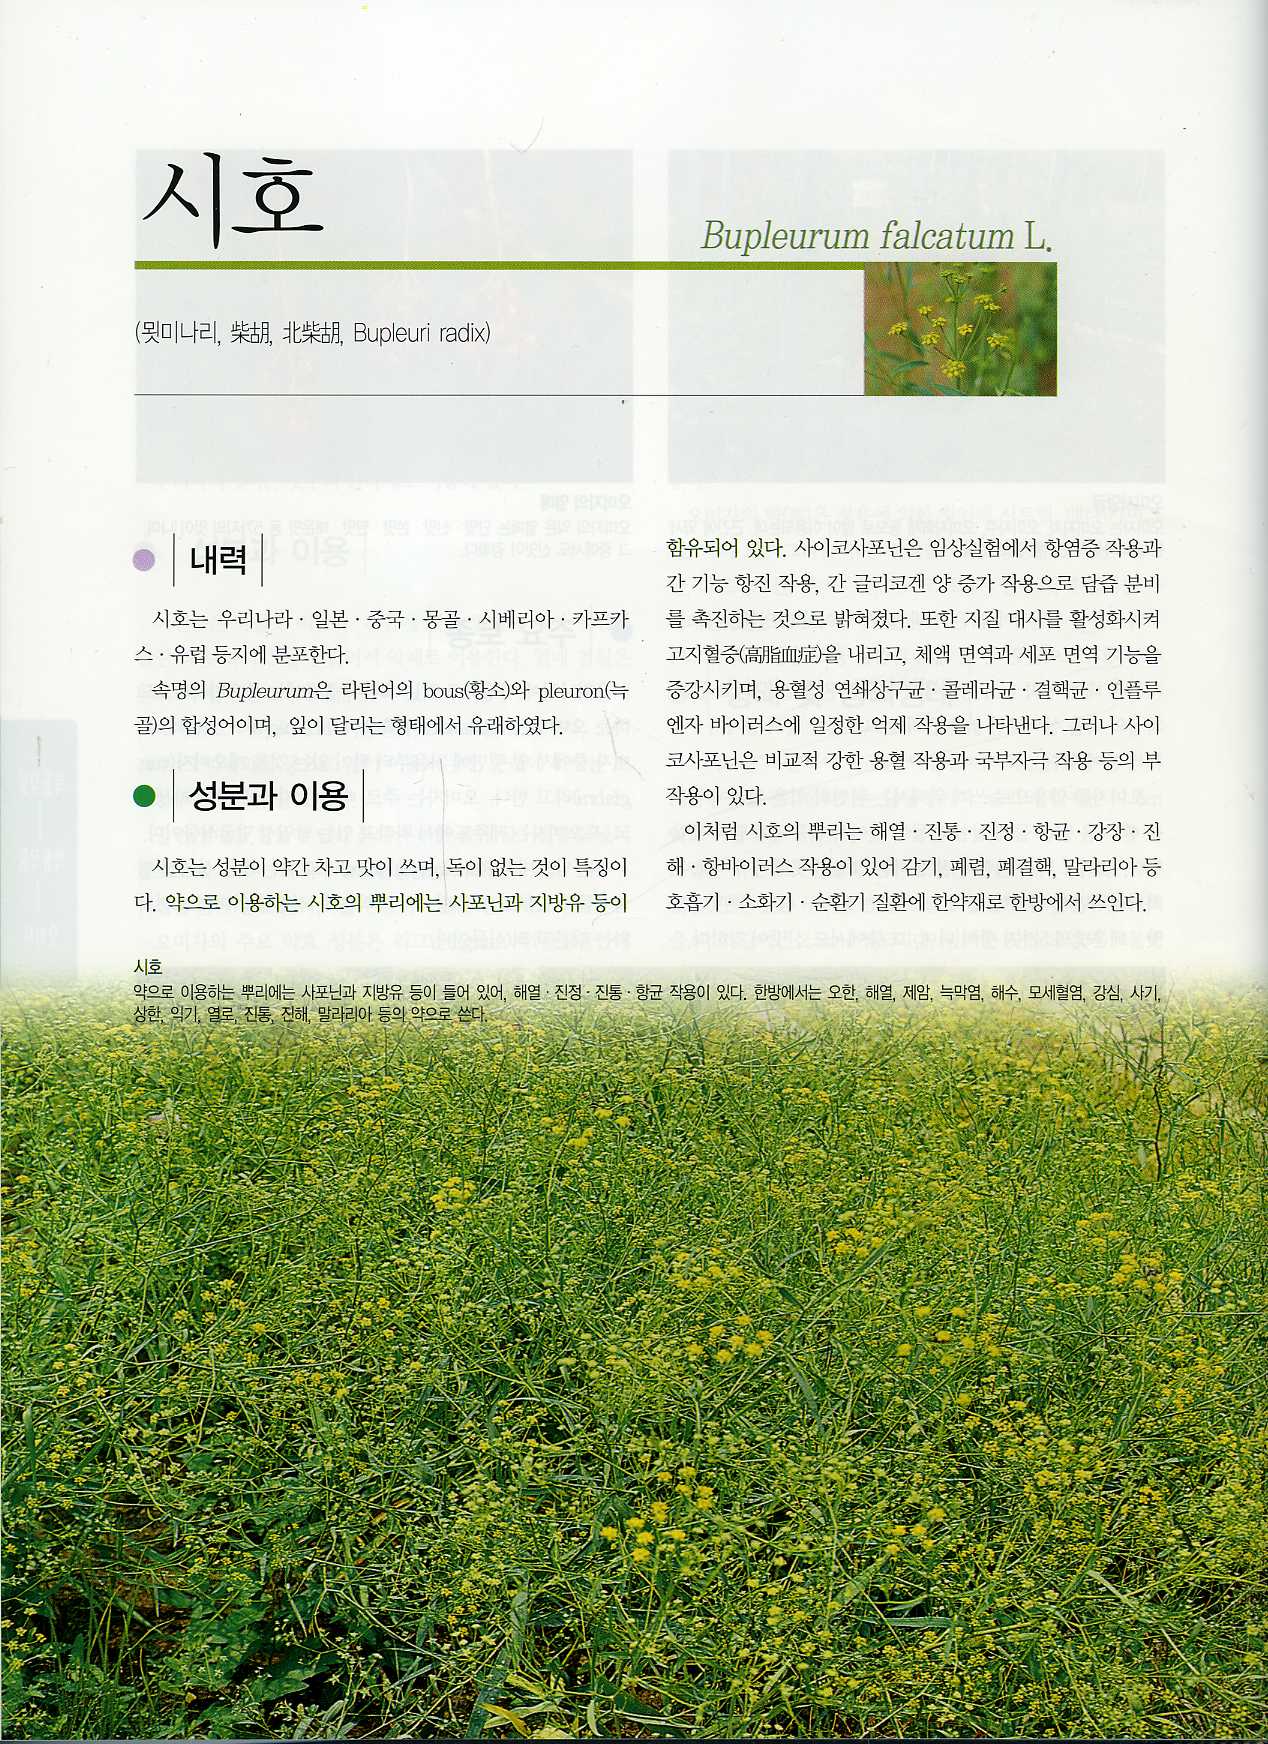 한국토종작물자원도감